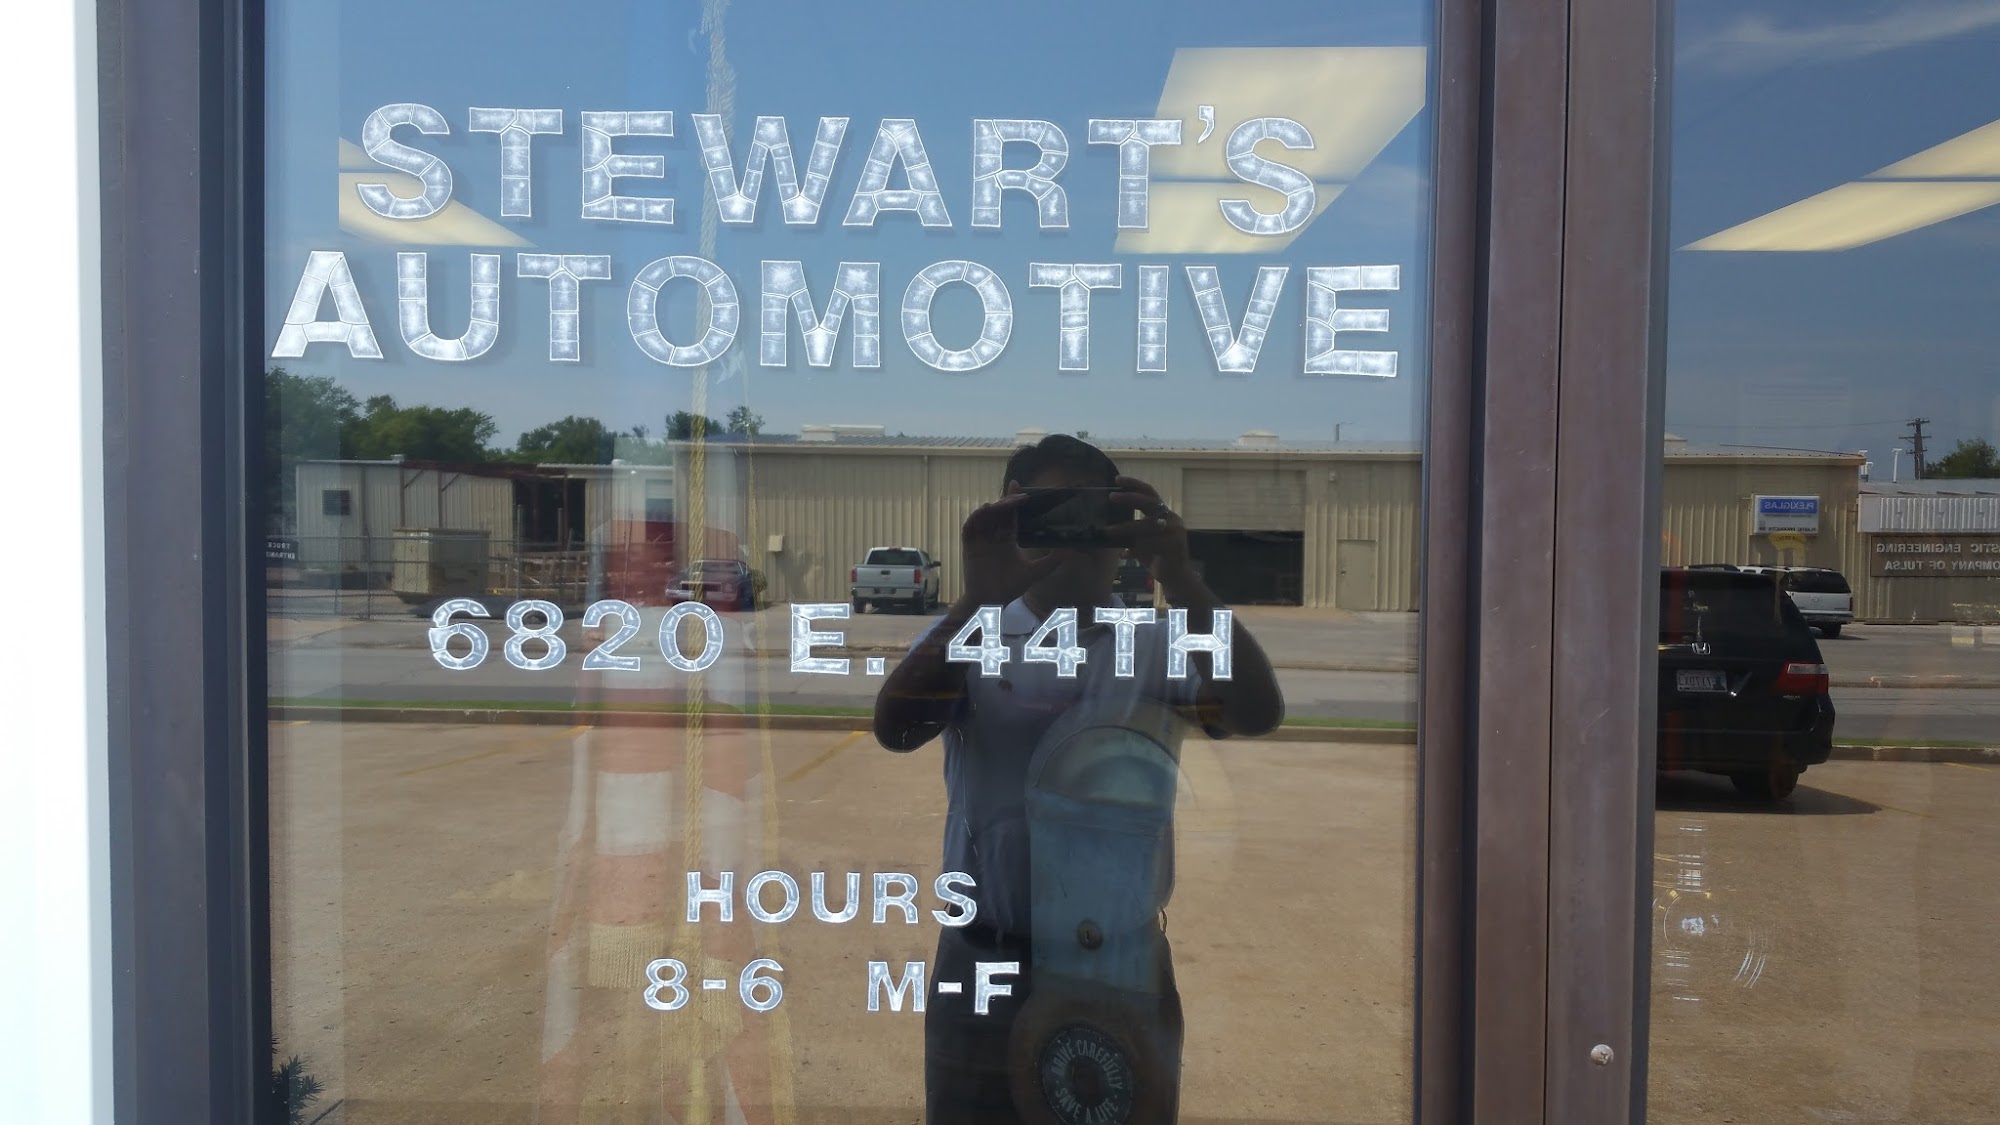 Stewart's Automotive